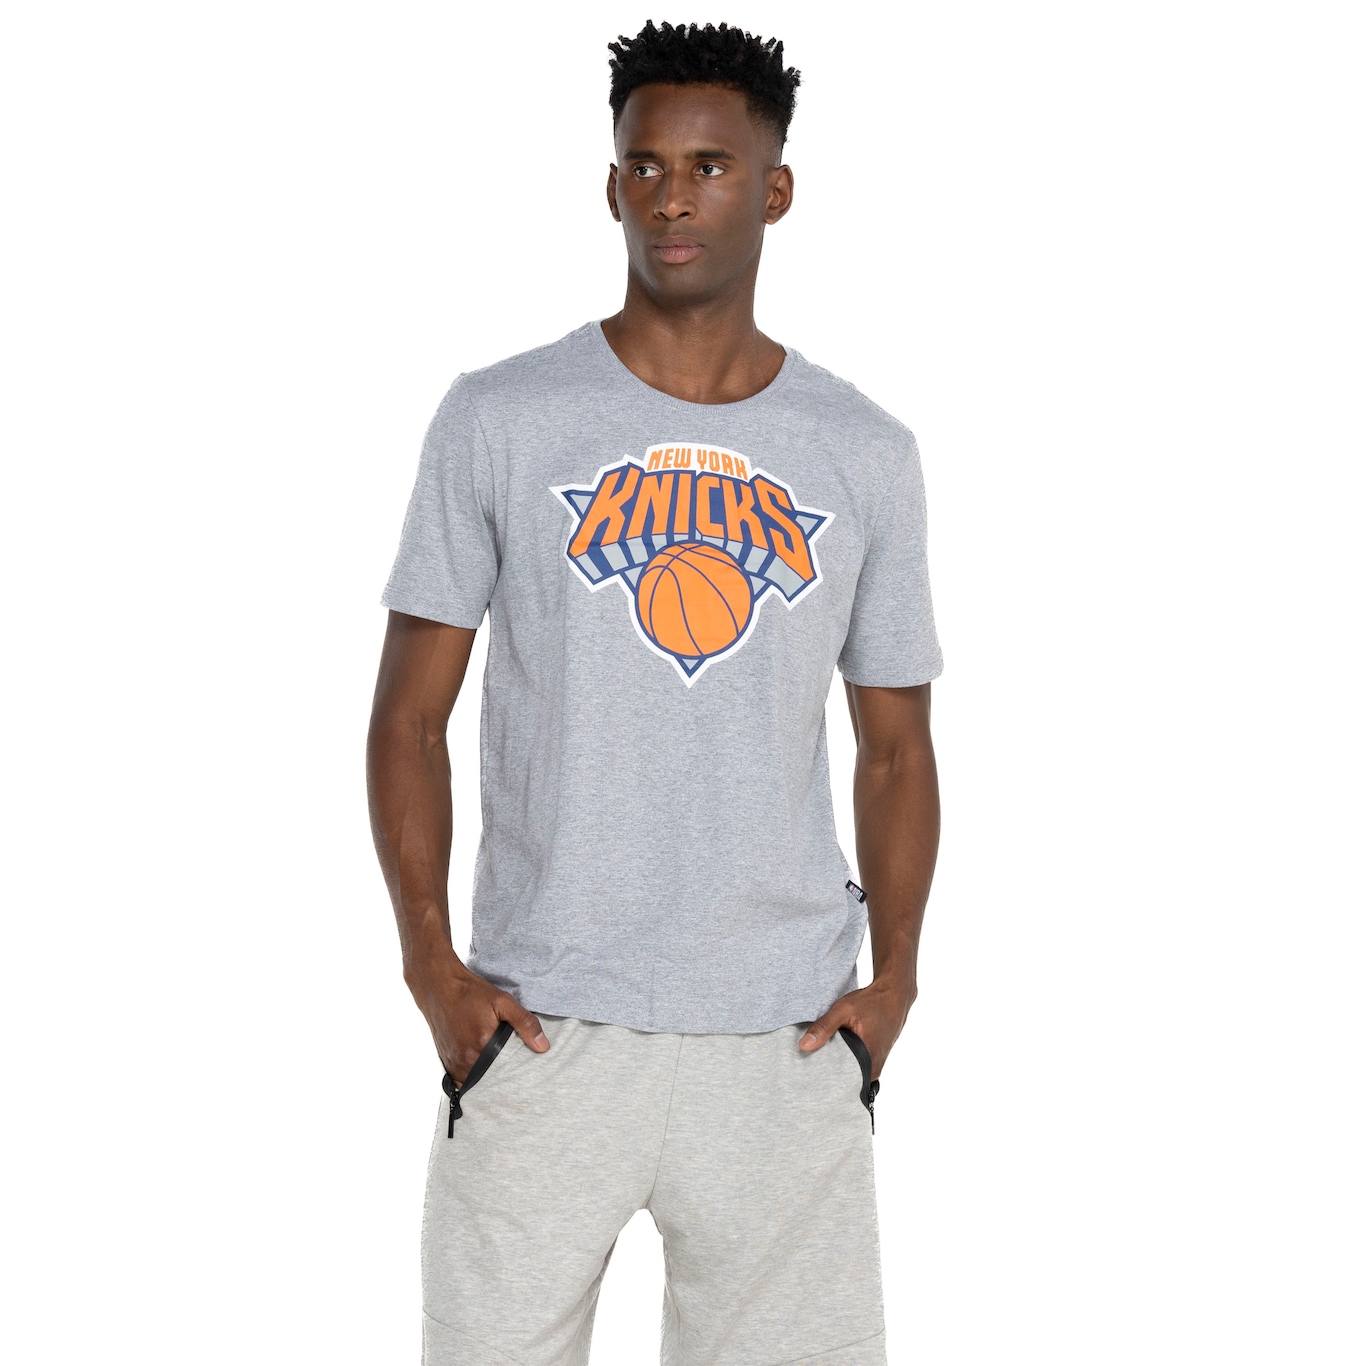 NBA Brasil - O New York Knicks também está com uniforme